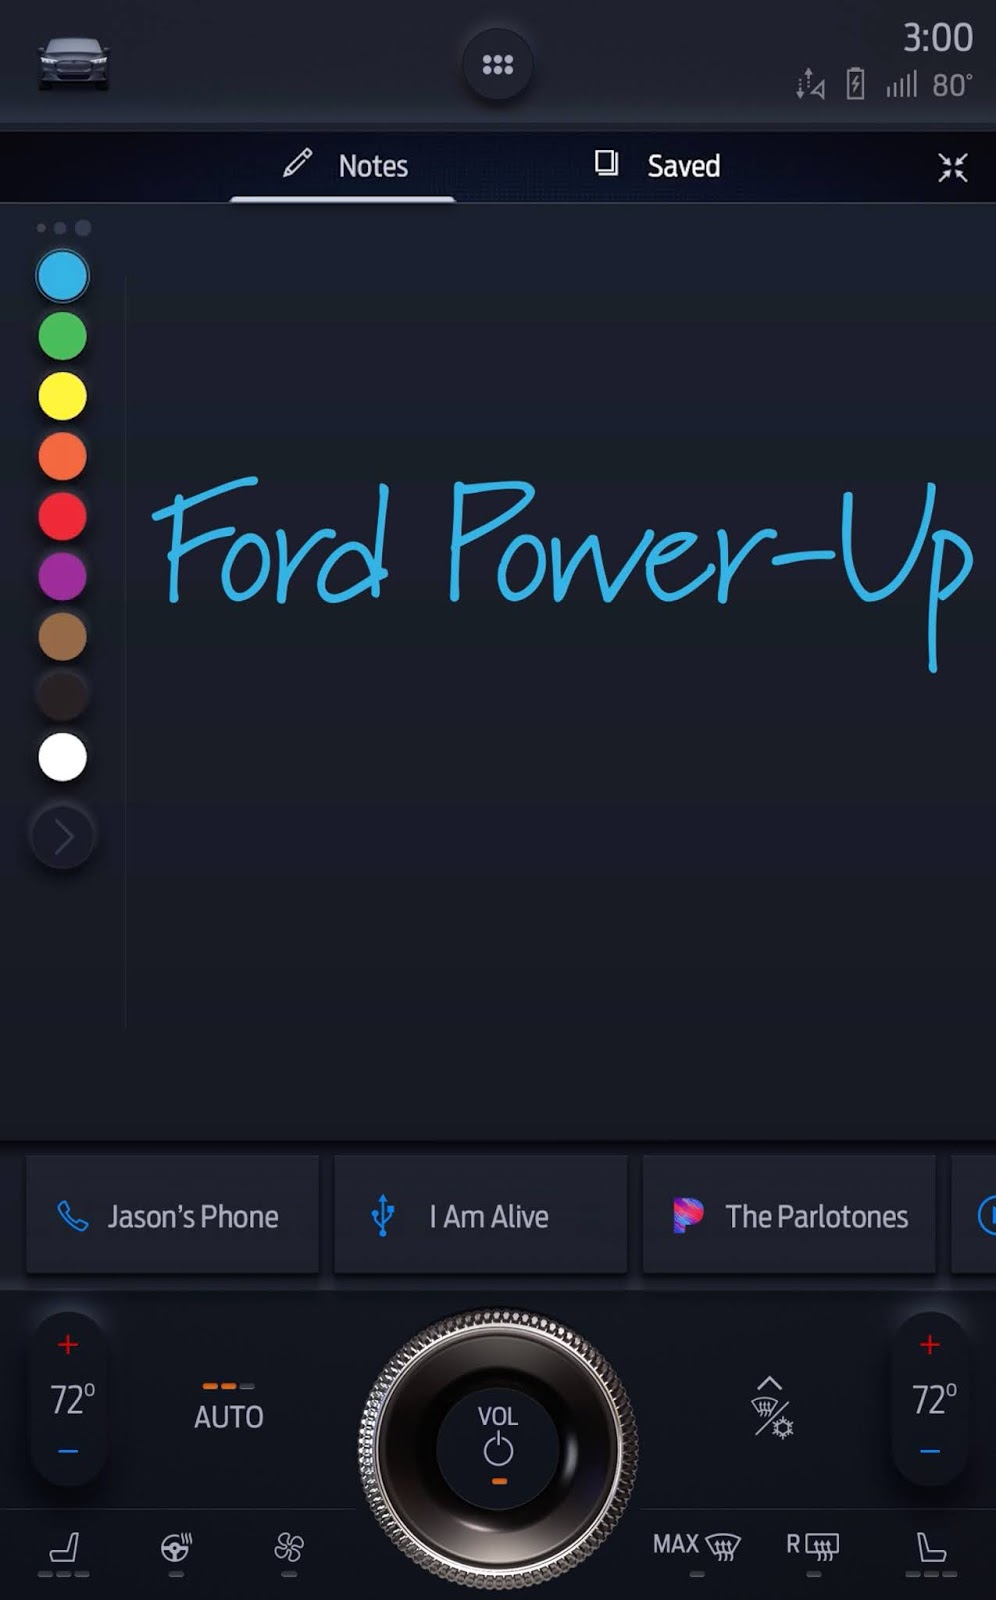 Croquis Ford Power Up 1 Les mises à jour logicielles Power-Up lancées avec la nouvelle Mustang Mach-E permettront de mettre à niveau en permanence tous les véhicules Ford.